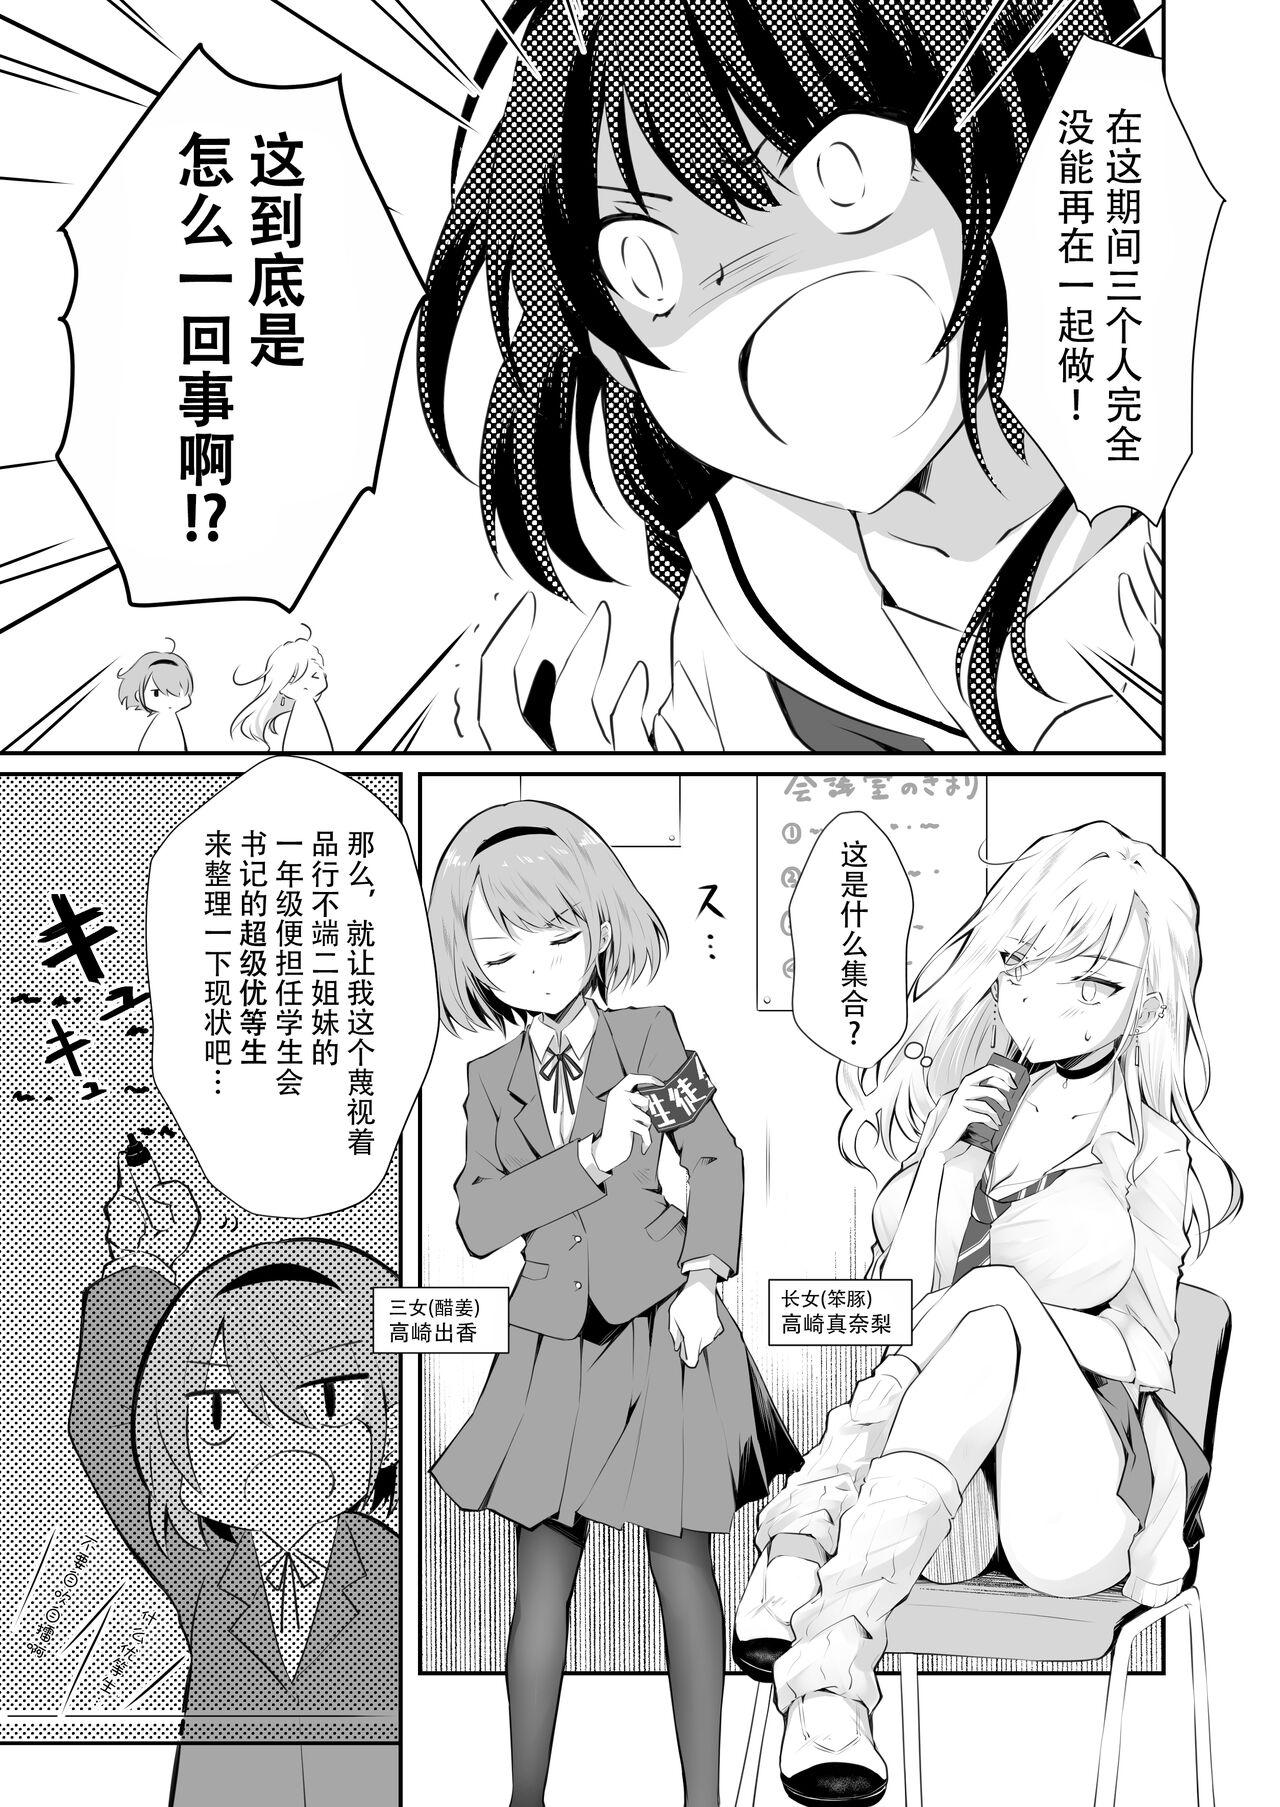 Nurumassage 家庭内売春2 NICOLAI - Original Uncut - Page 6